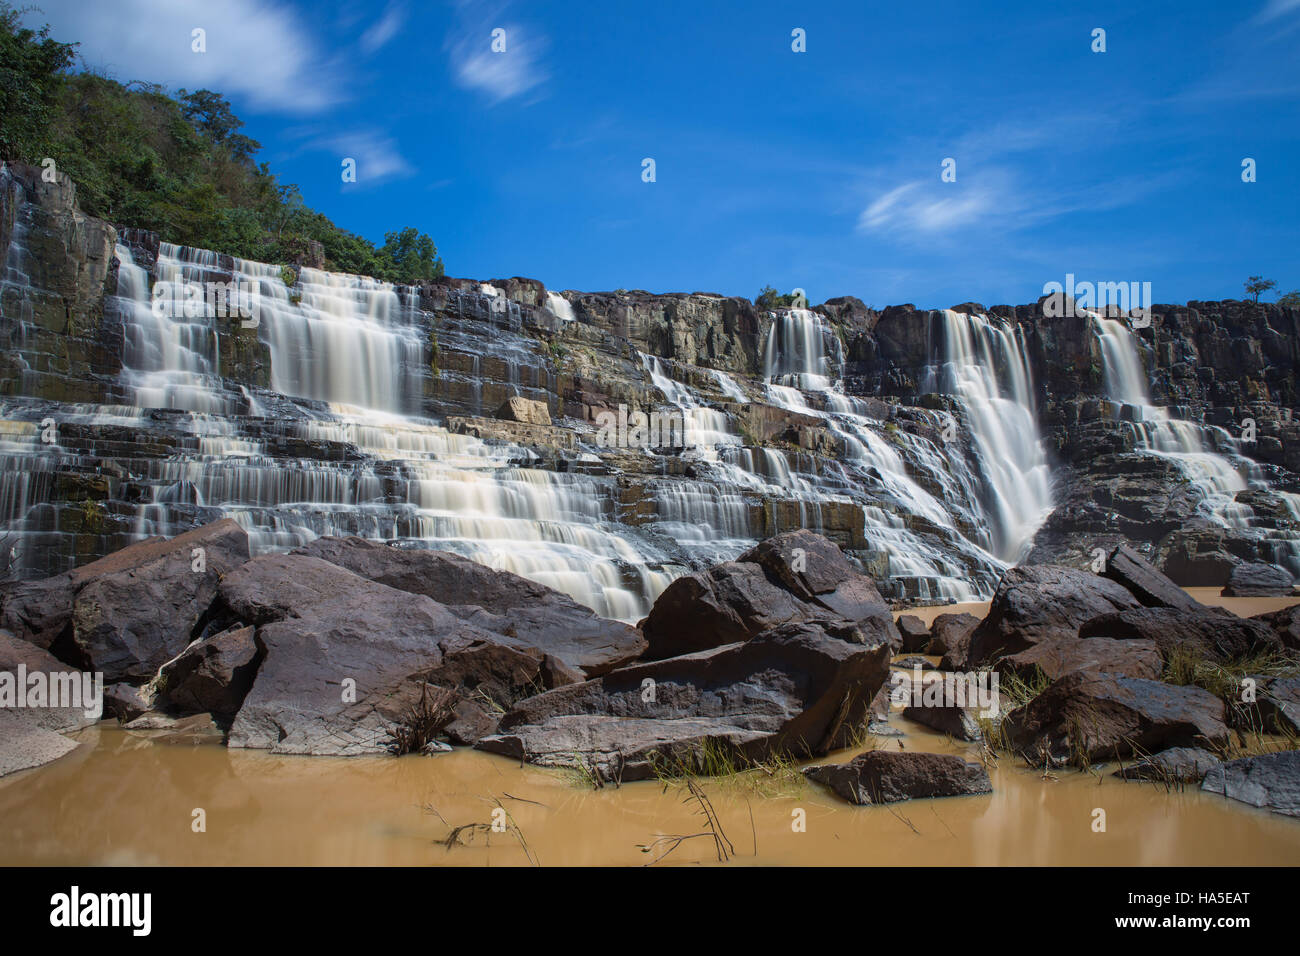 Pongour Wasserfall ist Wasserfall berühmtesten und schönsten des Herbstes in Dalat, Entfernung von Dalat Stadt Schätzung 45 km Dalat Vietnam Stockfoto